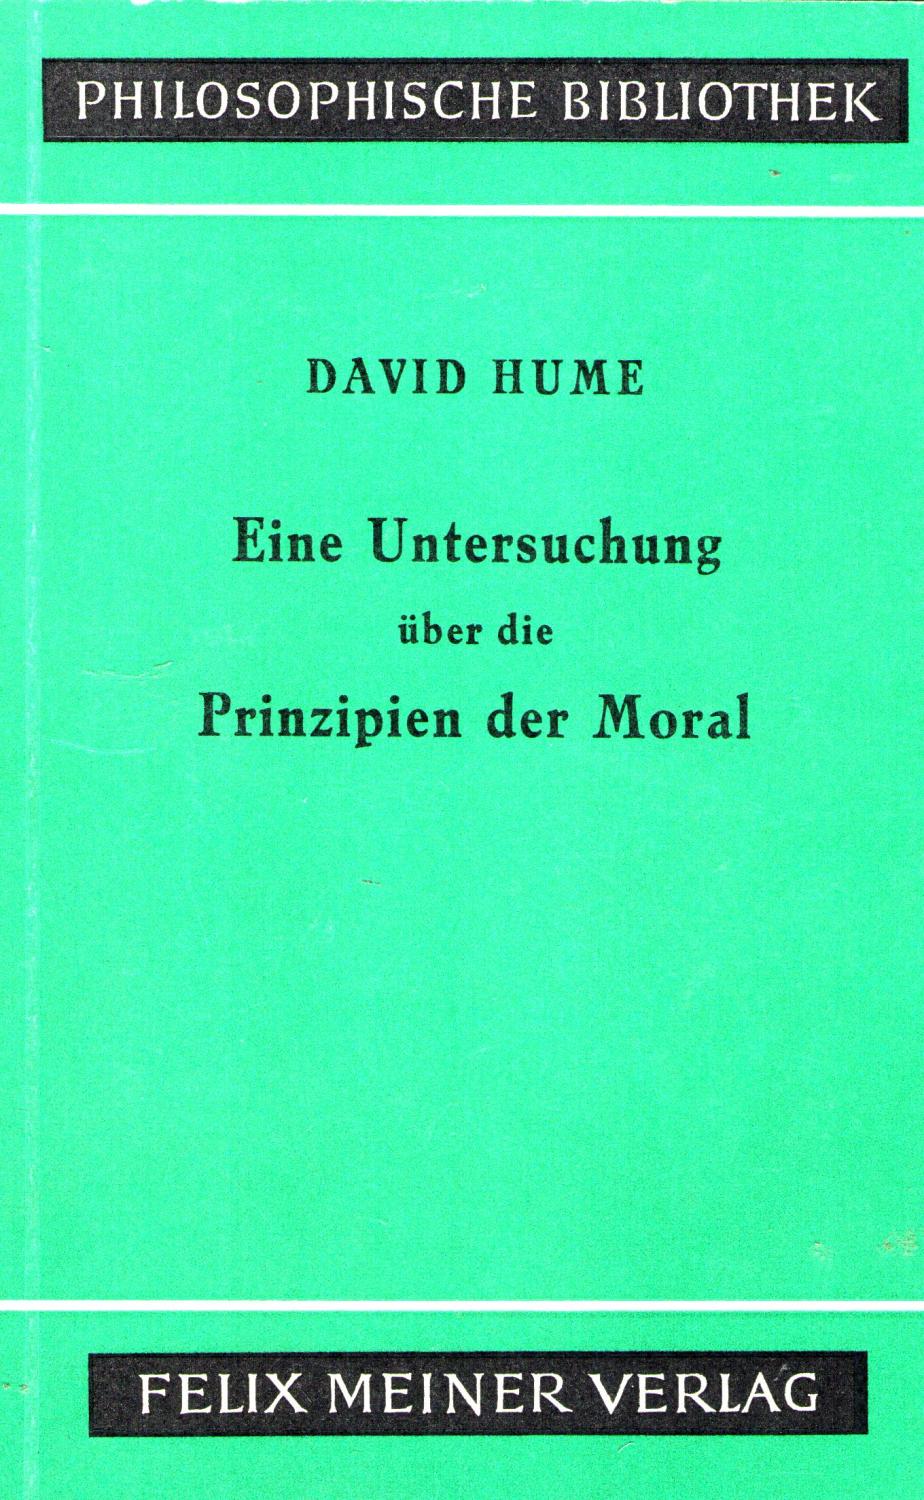 Eine Untersuchung über die Prinzipien der Moral (Philosophische Bibliothek 511)